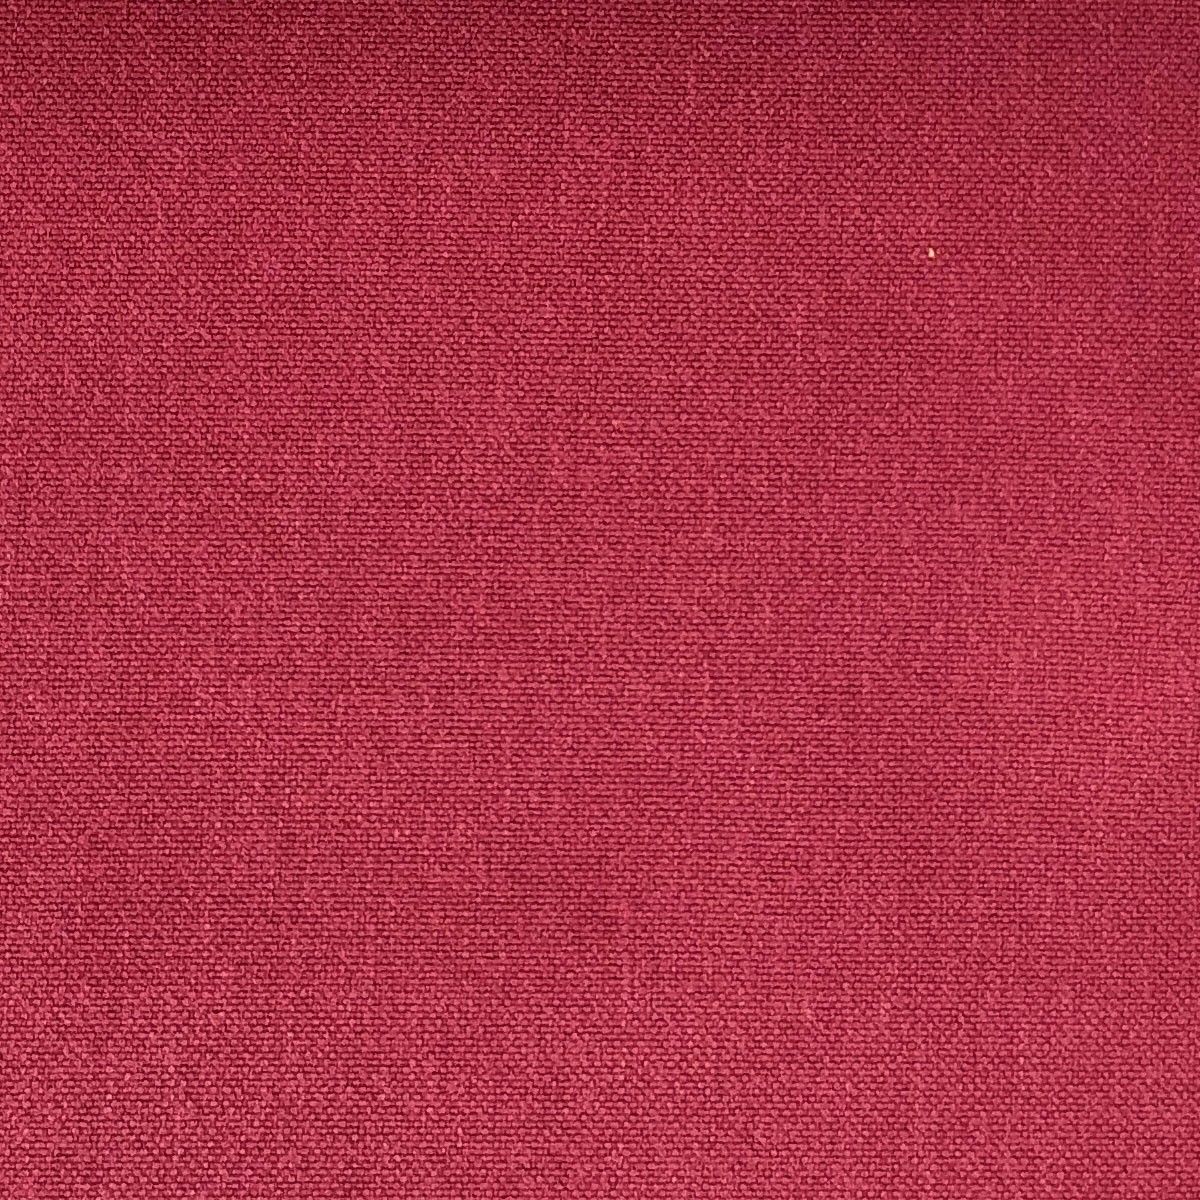 Glinara Bayberry Fabric by Chatham Glyn